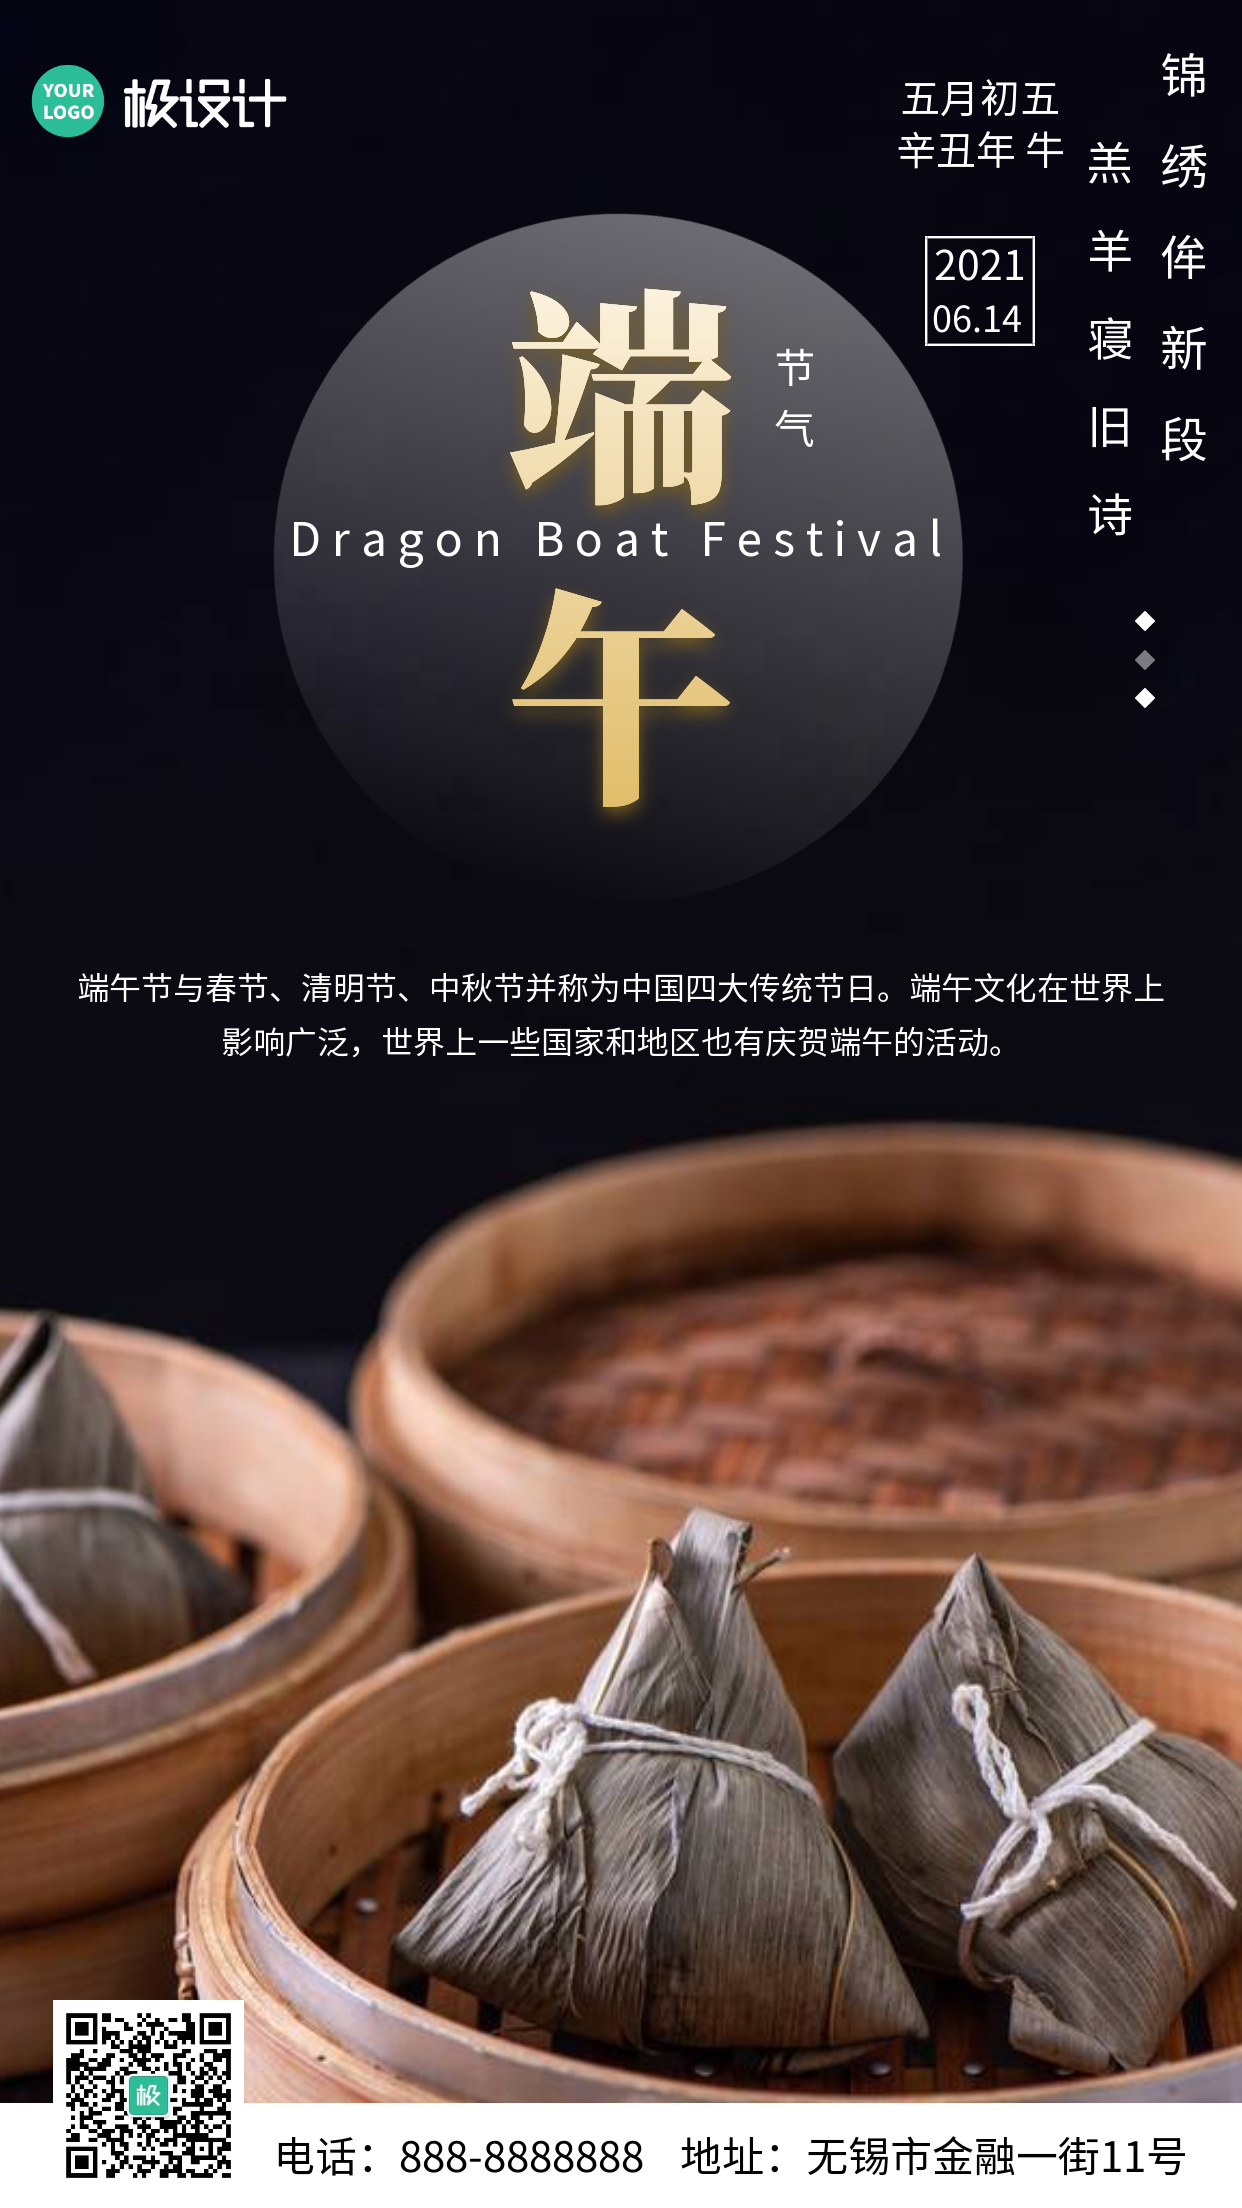 中国传统节日之端午节节假日宣传手机摄影图海报